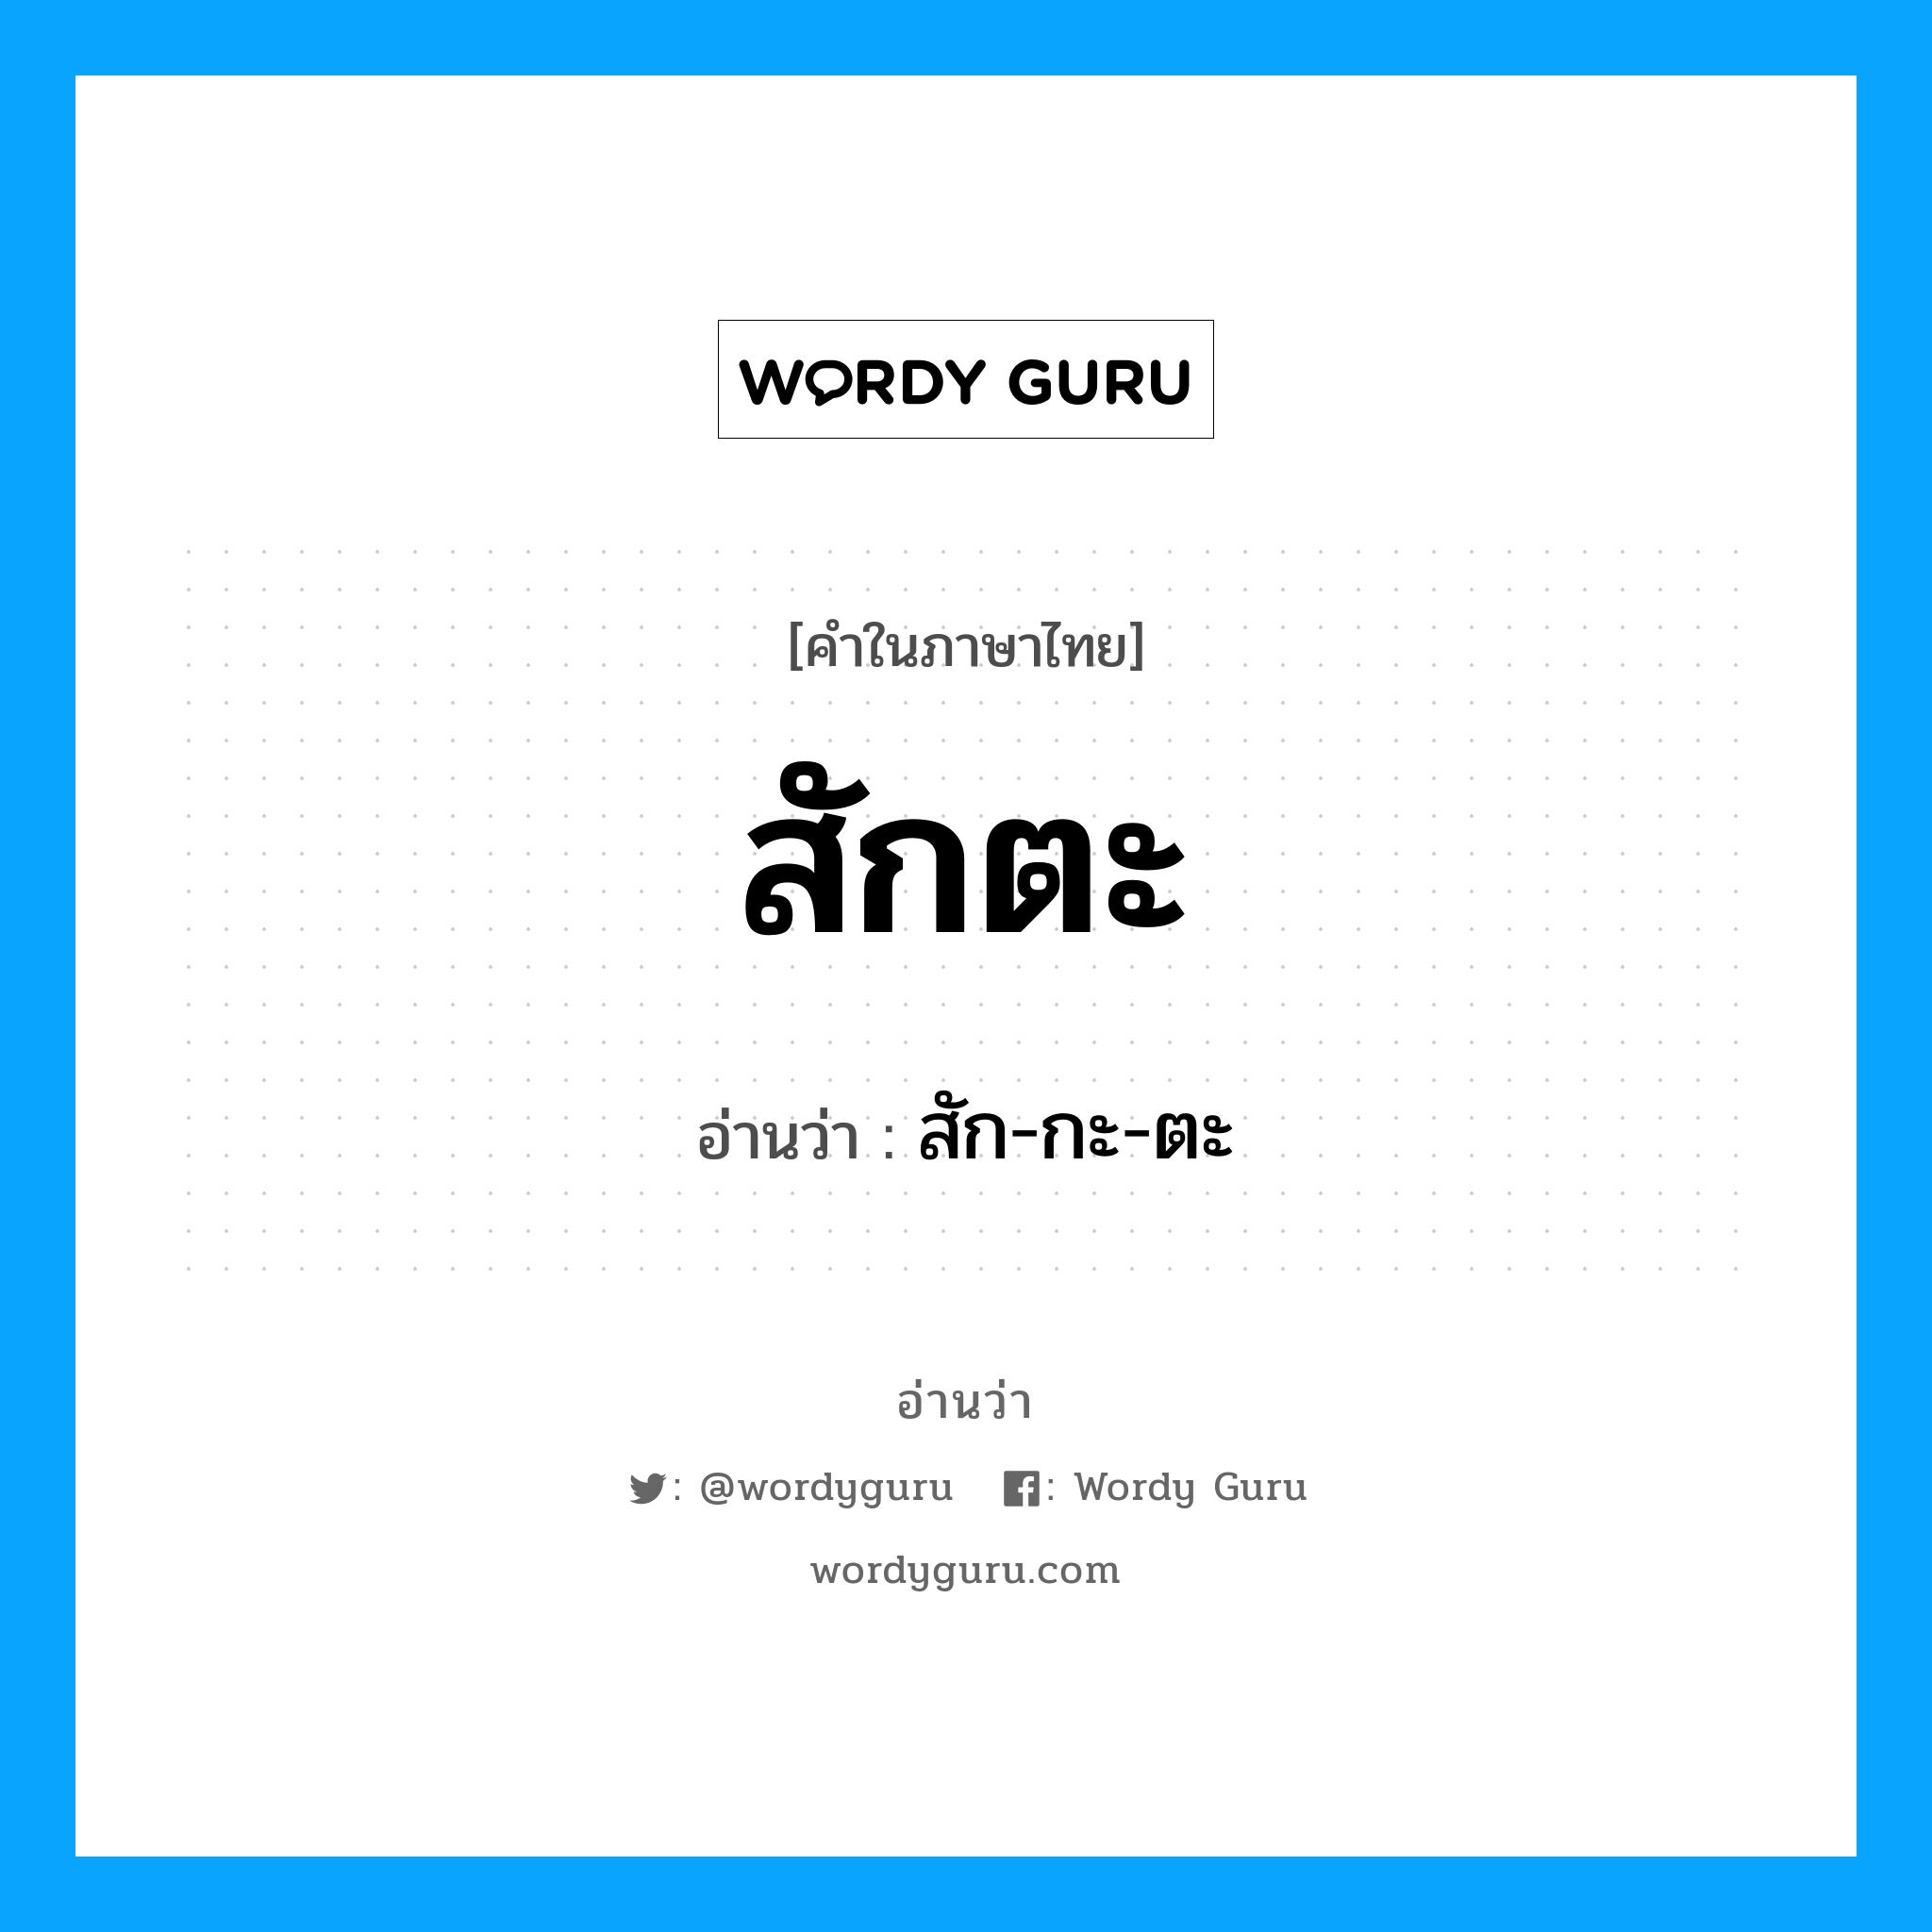 สัก-กะ-ตะ เป็นคำอ่านของคำไหน?, คำในภาษาไทย สัก-กะ-ตะ อ่านว่า สักตะ